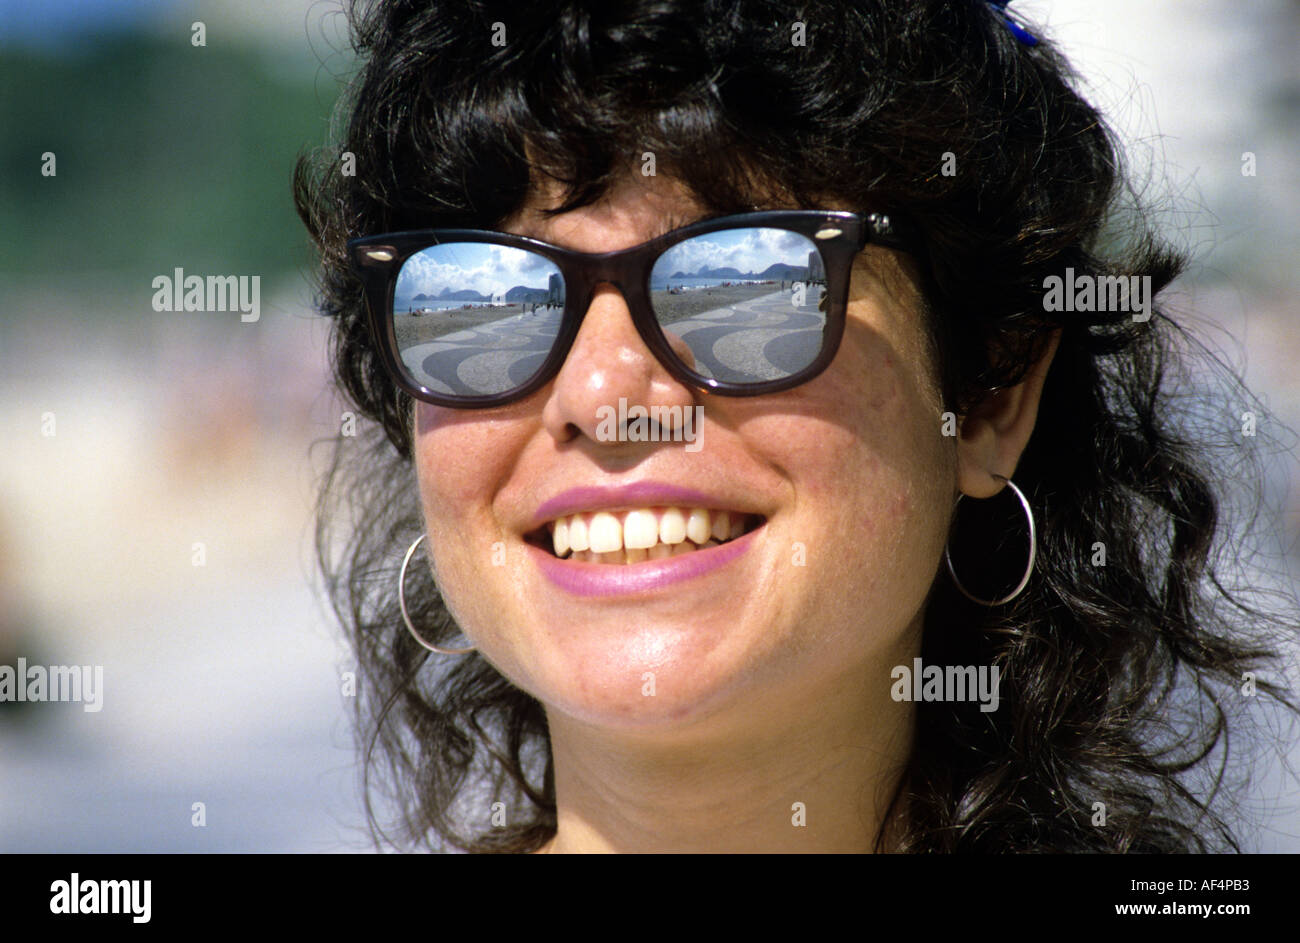 Réflexions de la mosaïque du pavé à la plage de Copacabana dans le miroir lunettes  de soleil d'un sourire des champions 2013 Rio de Janeiro Brésil Photo Stock  - Alamy